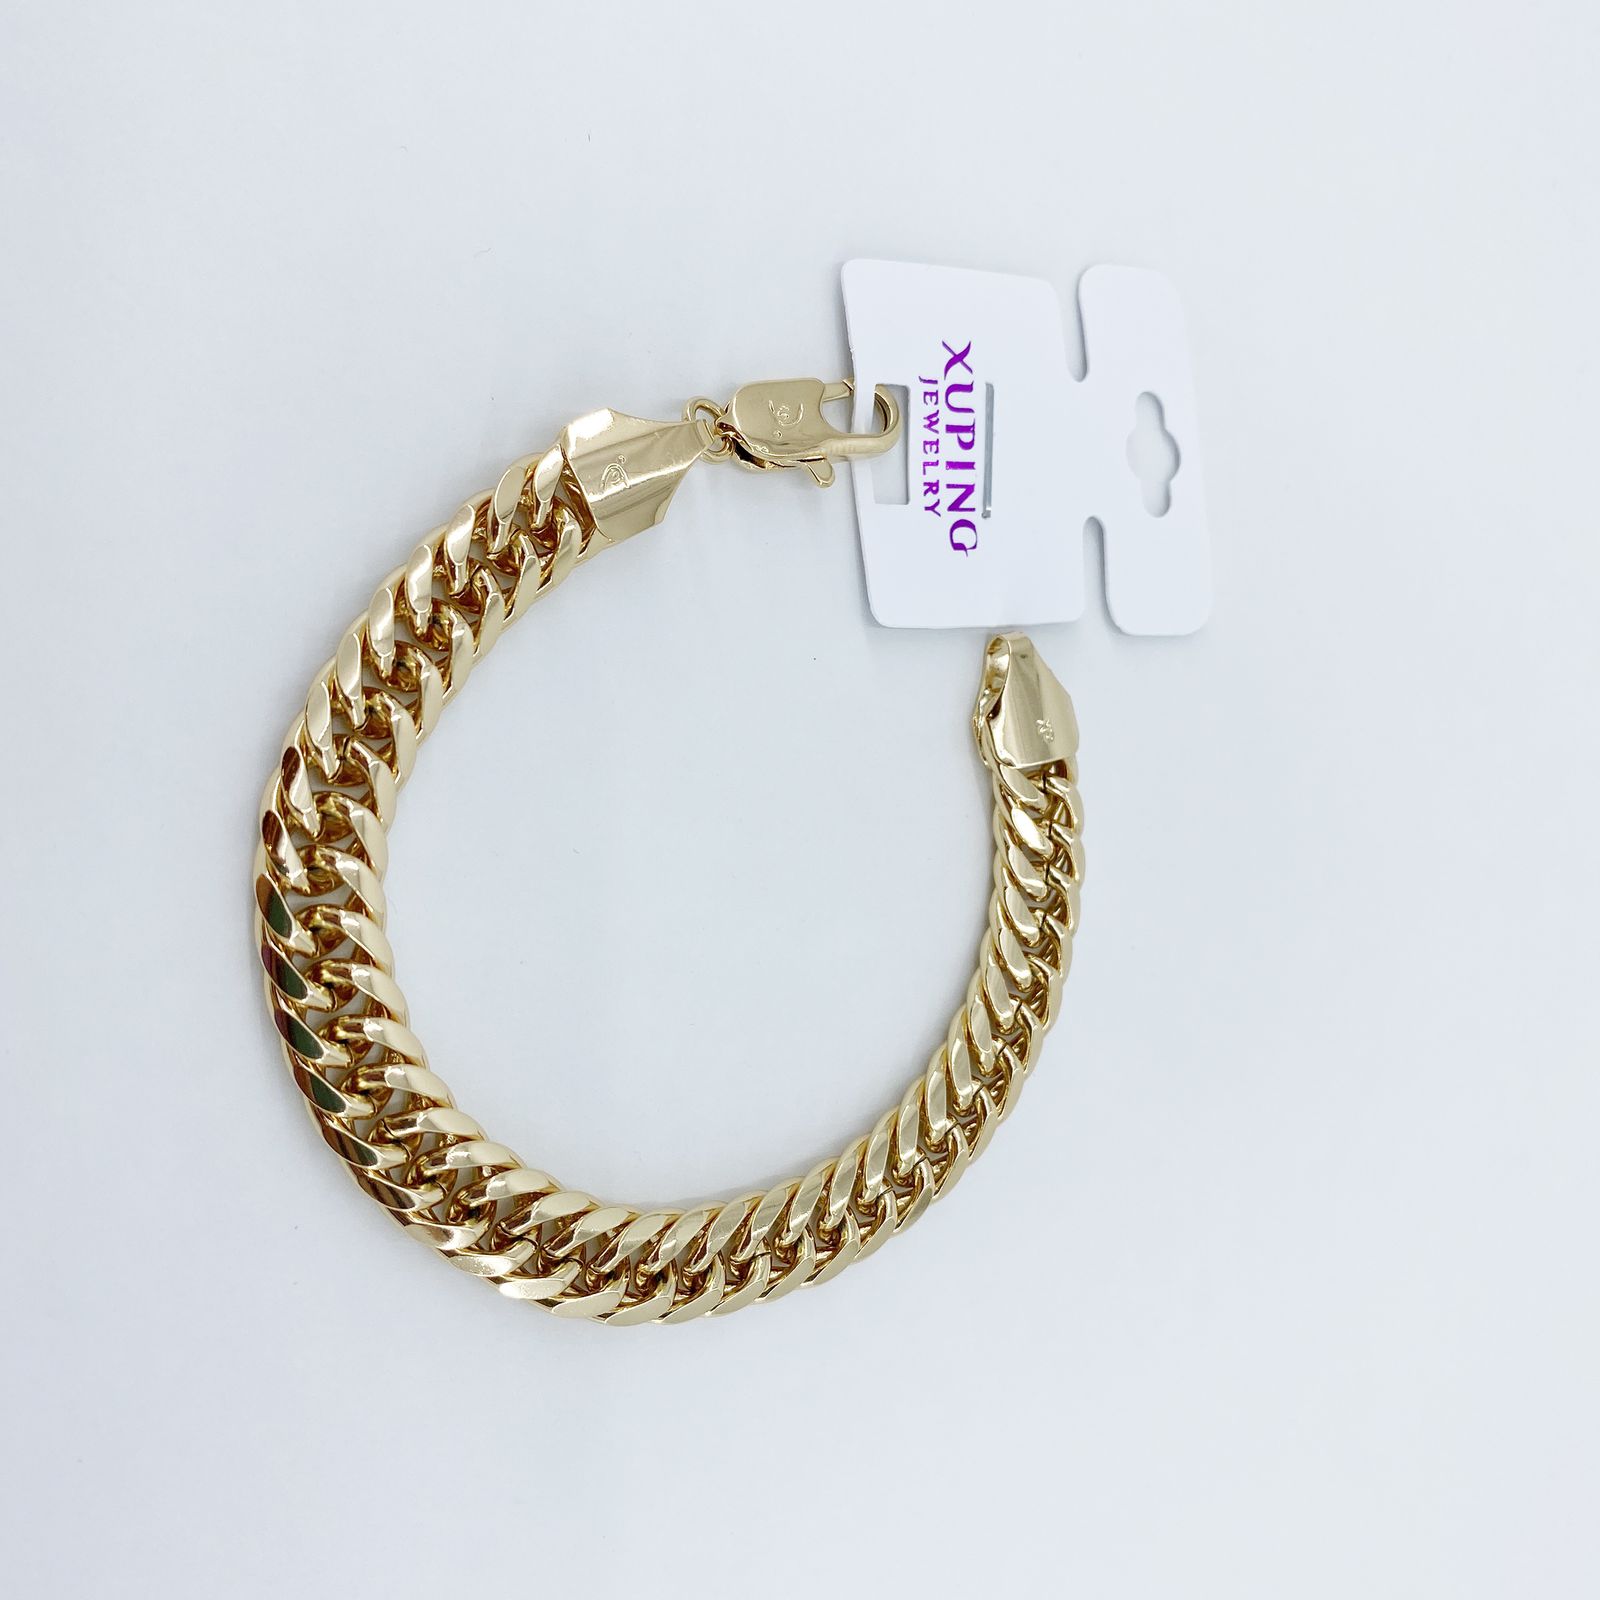 دستبند زنانه ژوپینگ کد B3021 -  - 2